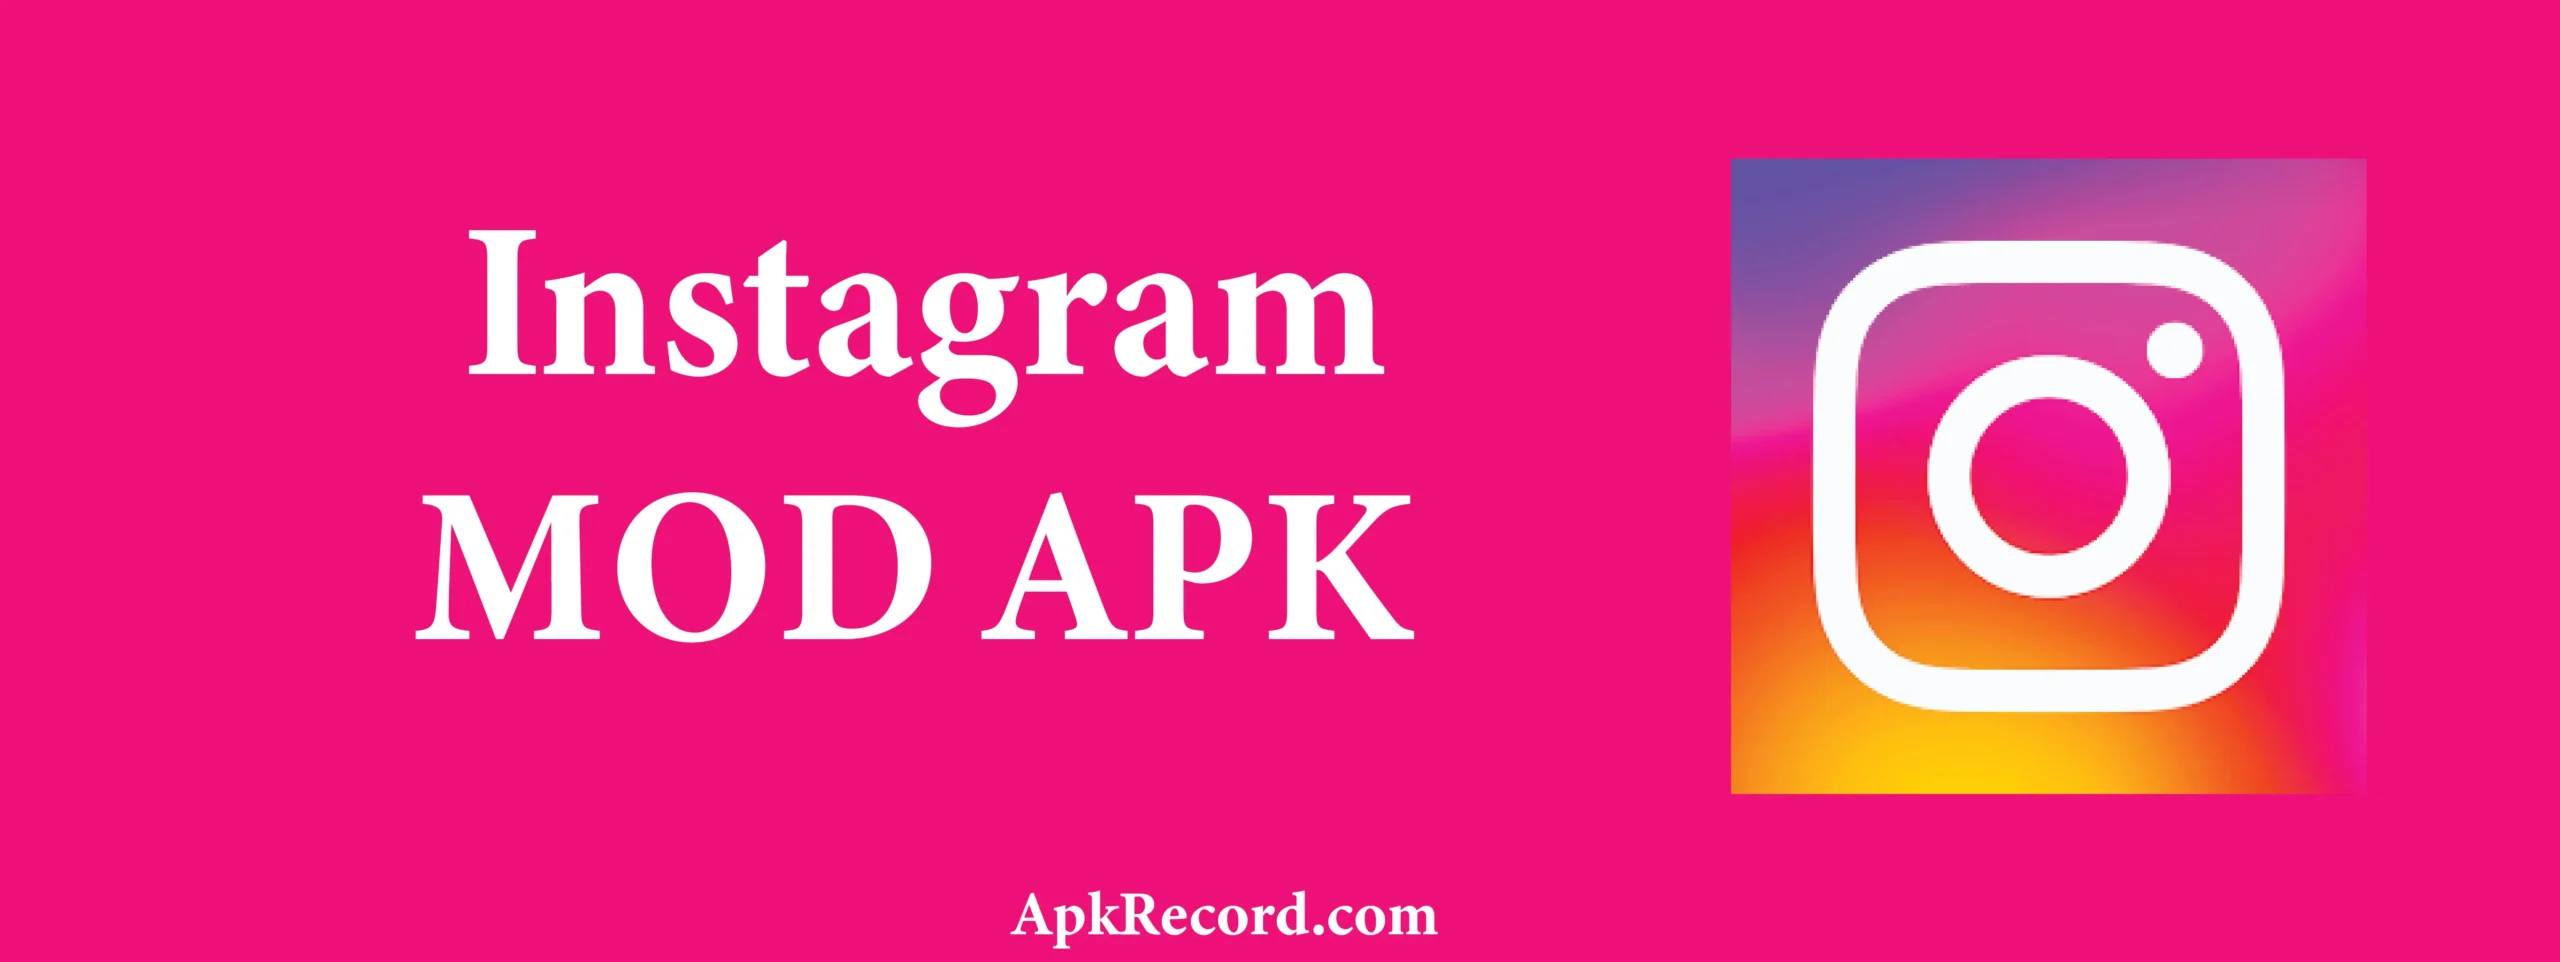 GB Instagram MOD APK V313.0.0.0.112